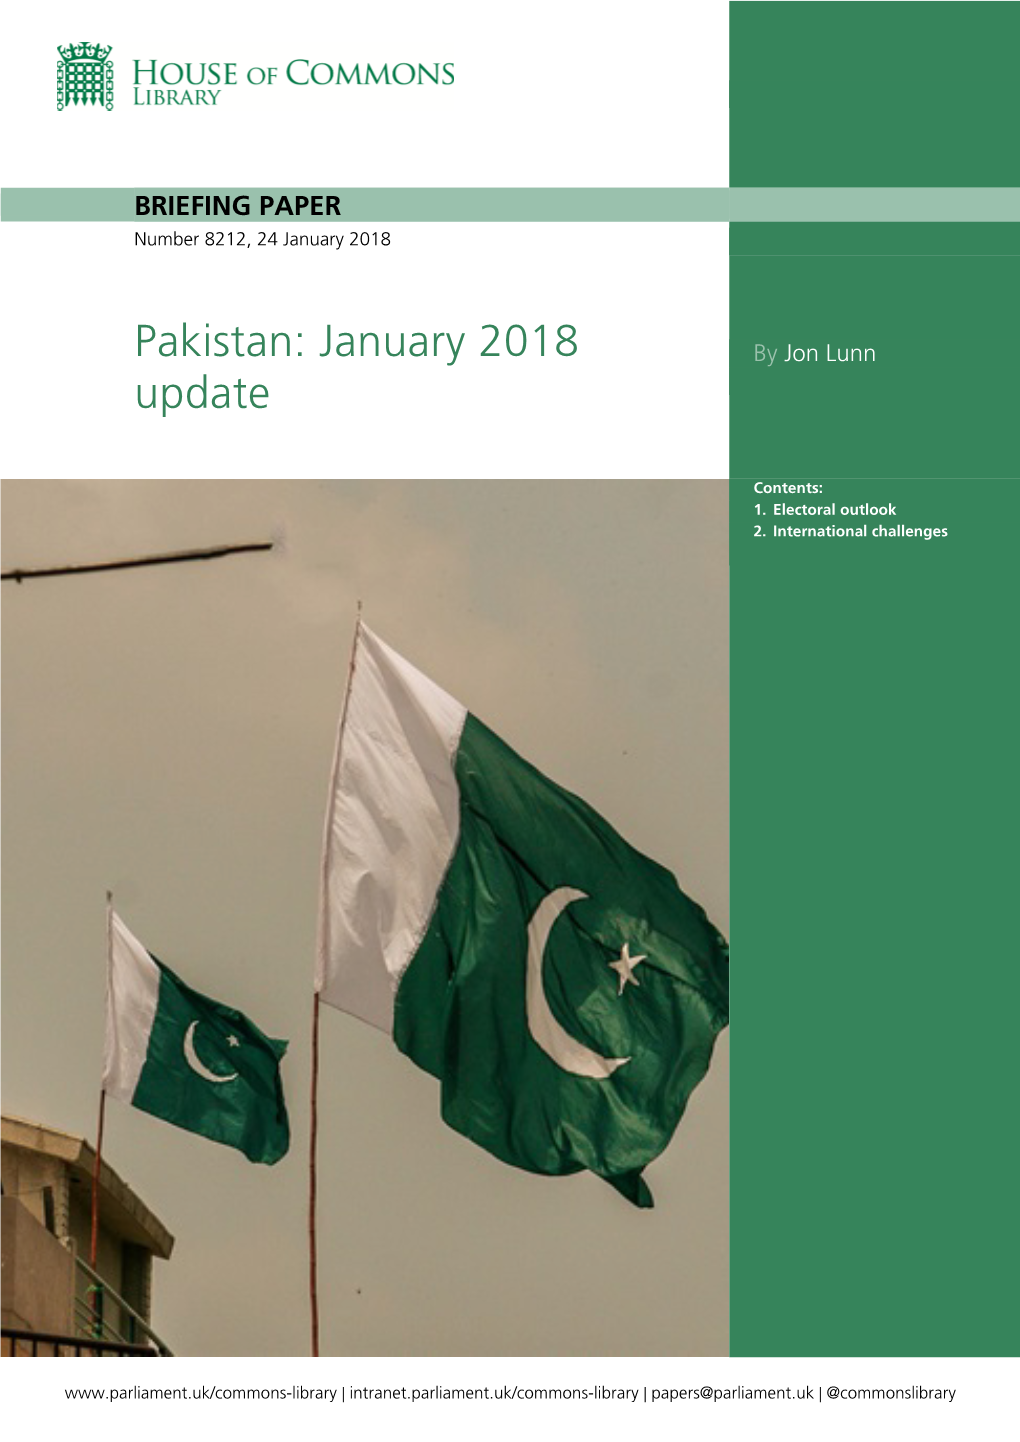 Pakistan: January 2018 Update